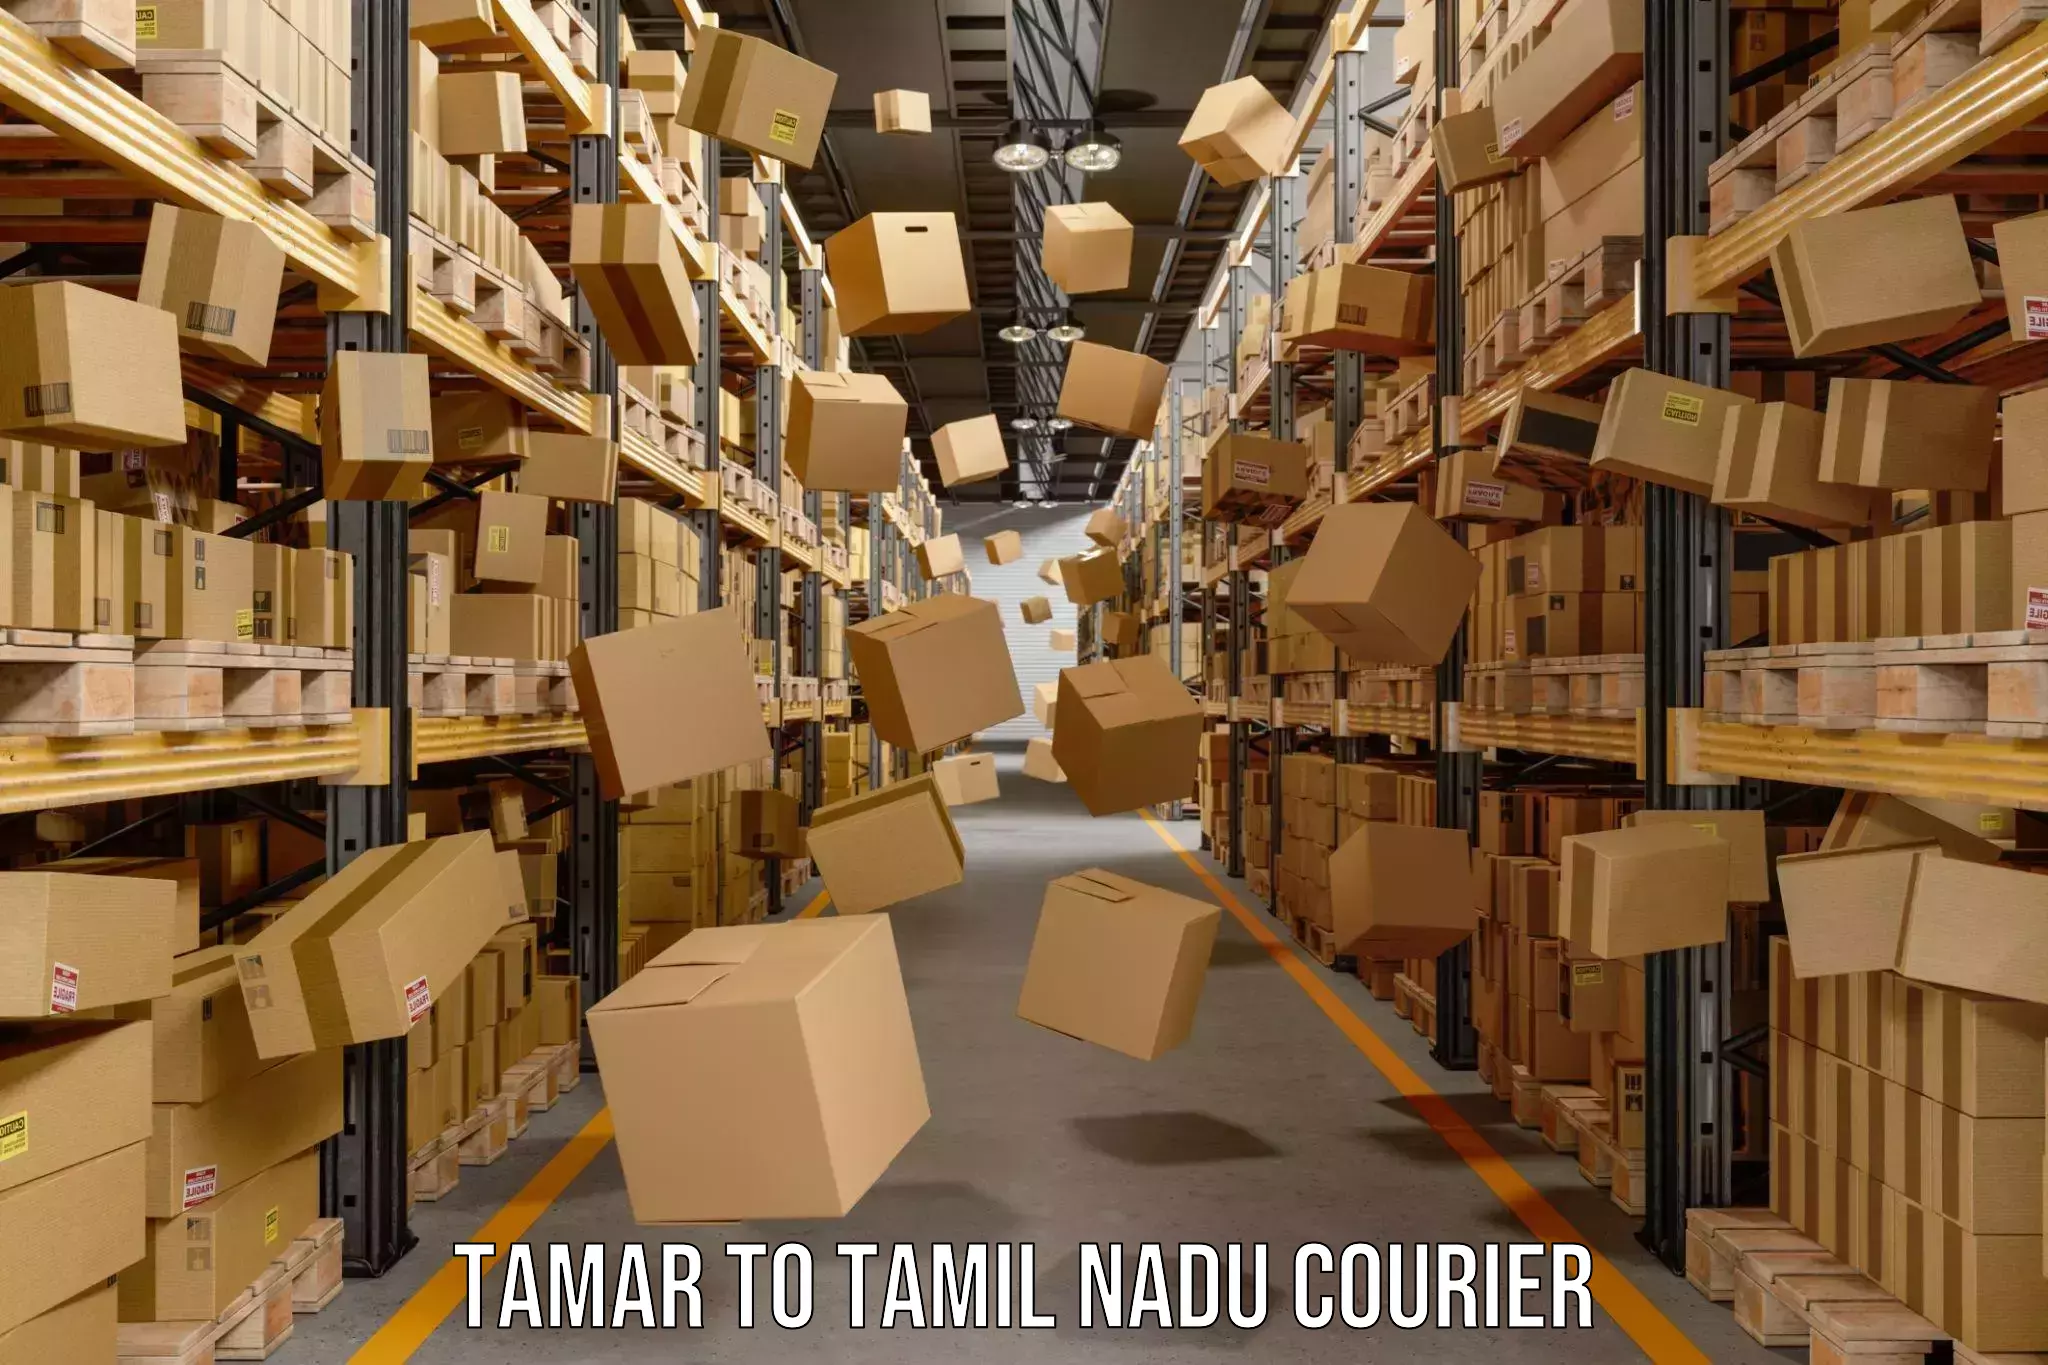 Bulk courier orders Tamar to Tiruturaipundi